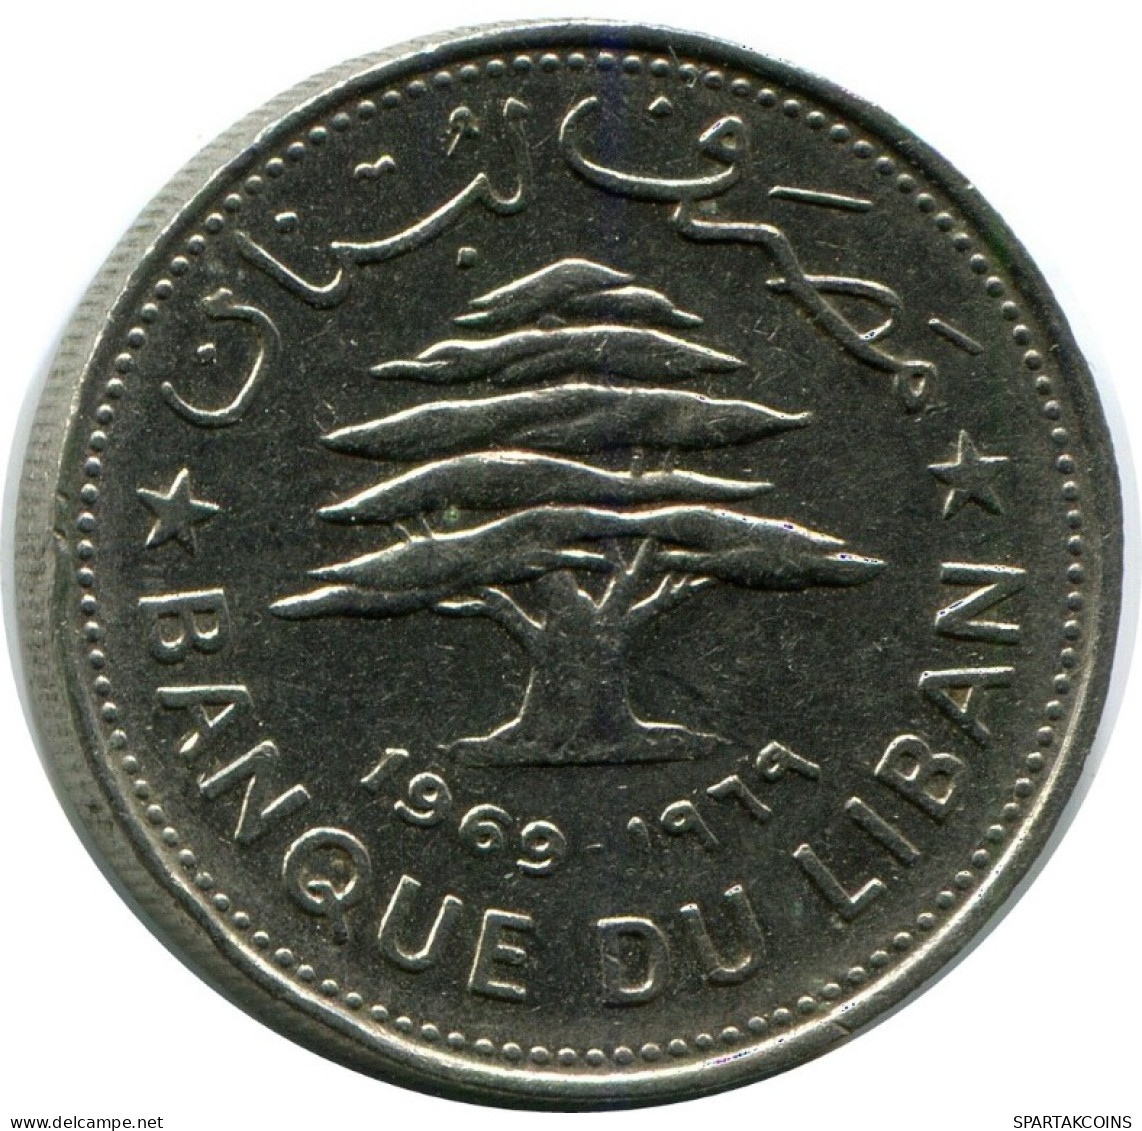 50 PIASTRES 1969 LEBANON Coin #AH784.U.A - Lebanon